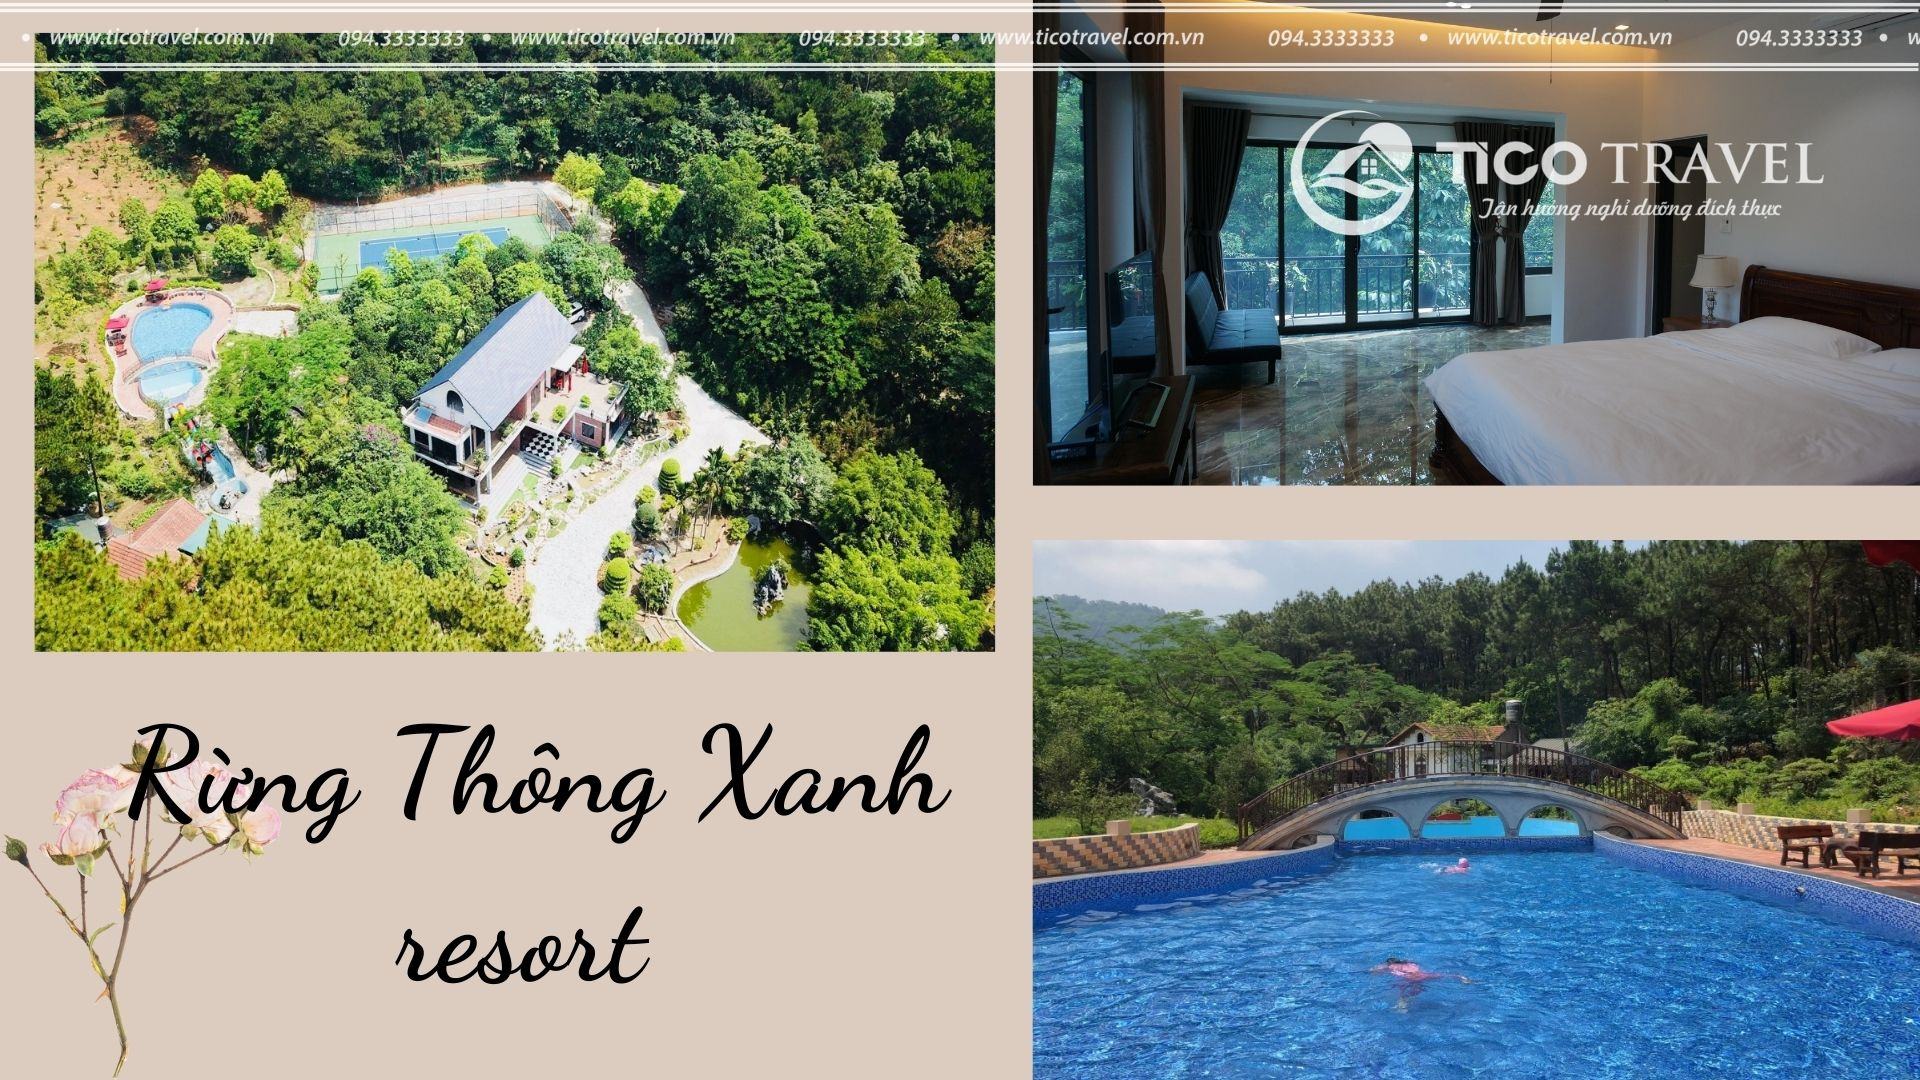 ảnh chụp Resort Sóc Sơn - Tico Rừng thông xanh 